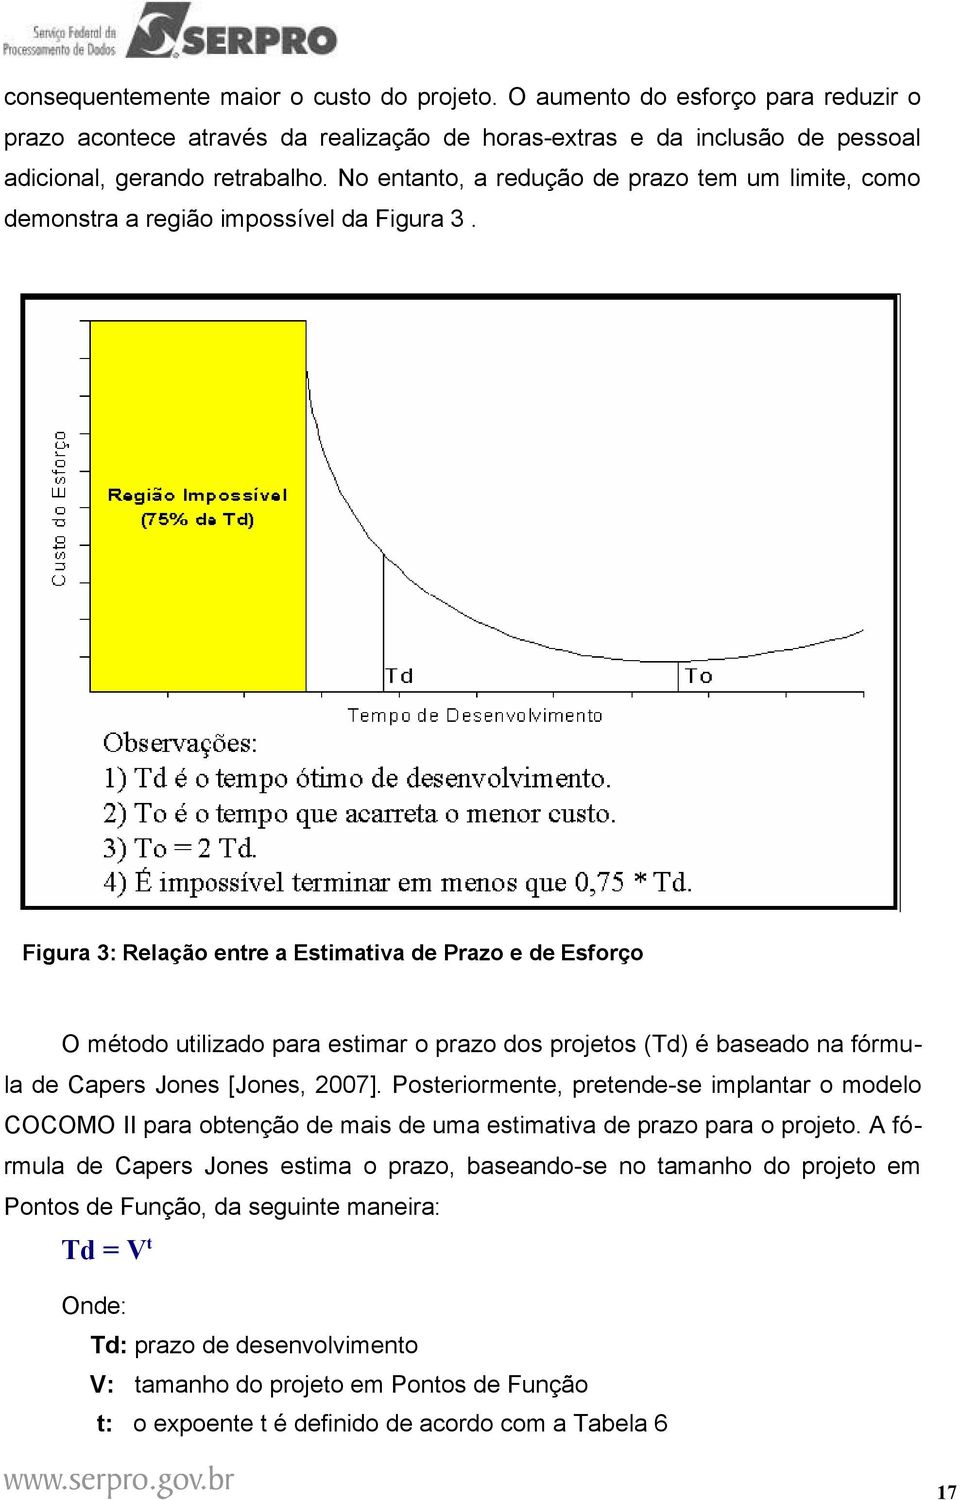 Figura 3: Relação entre a Estimativa de Prazo e de Esforço O método utilizado para estimar o prazo dos projetos (Td) é baseado na fórmula de Capers Jones [Jones, 2007].